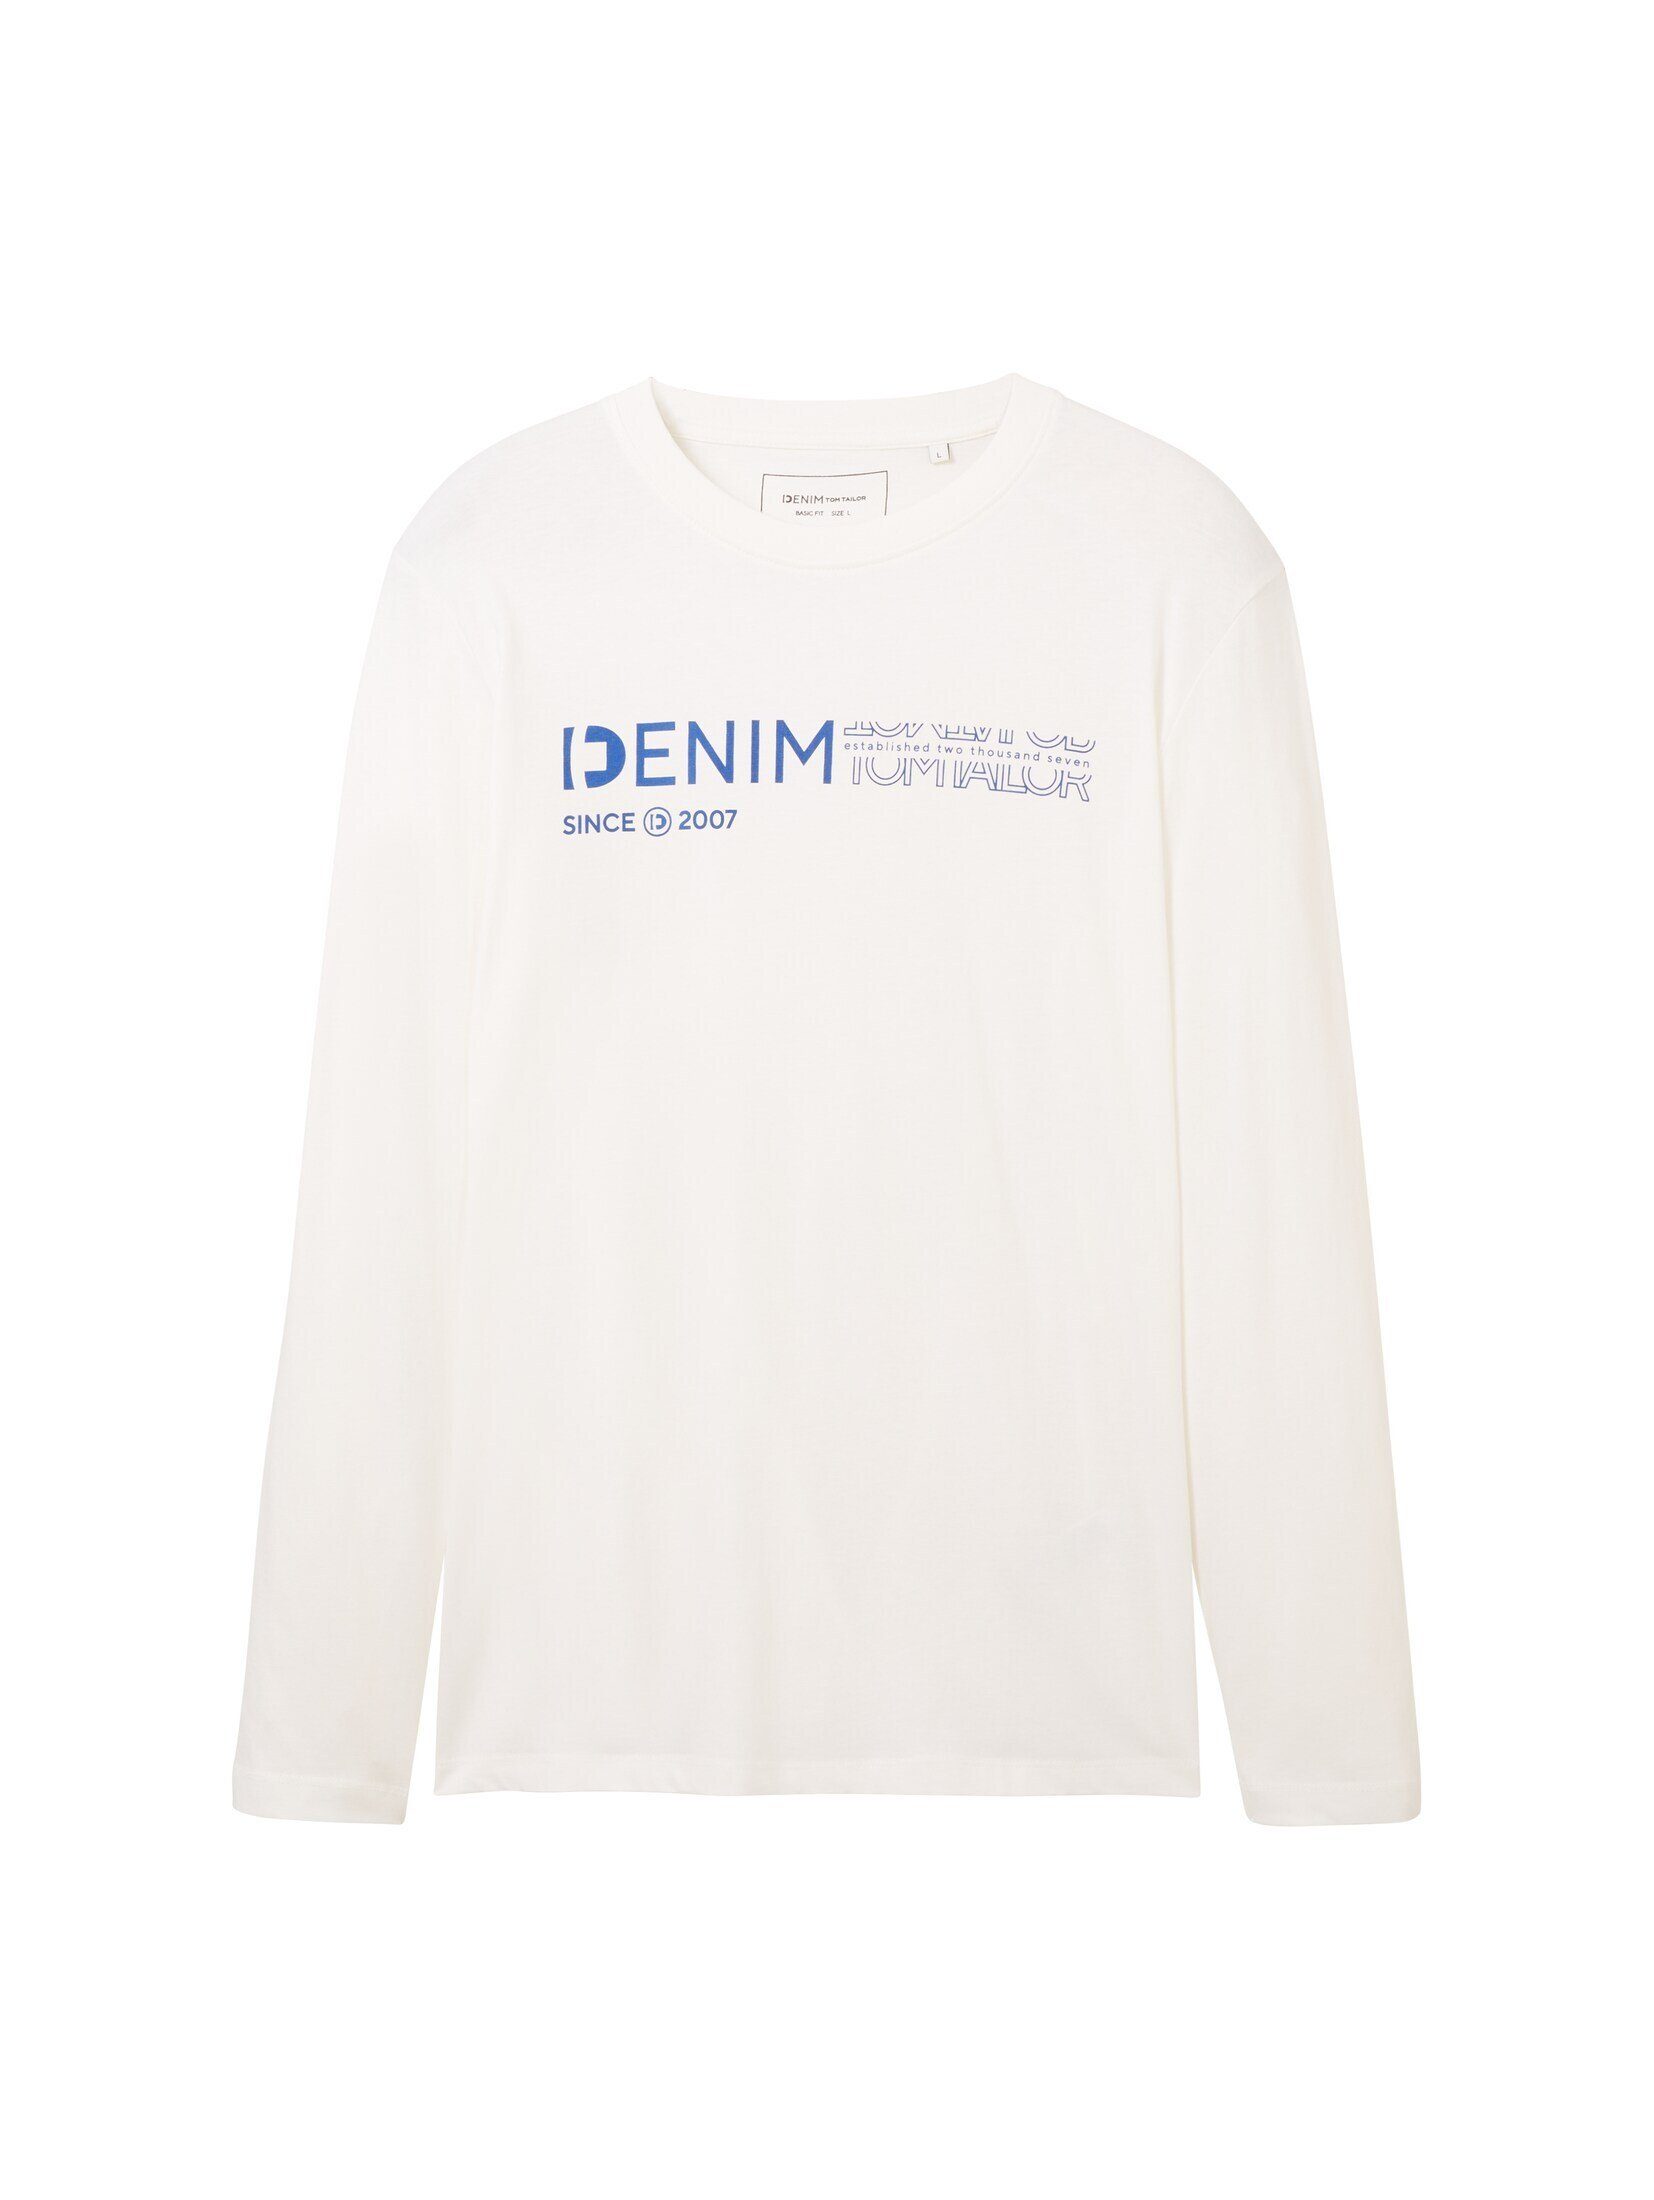 White T-Shirt Print Langarmshirt TOM Denim mit Wool Logo TAILOR